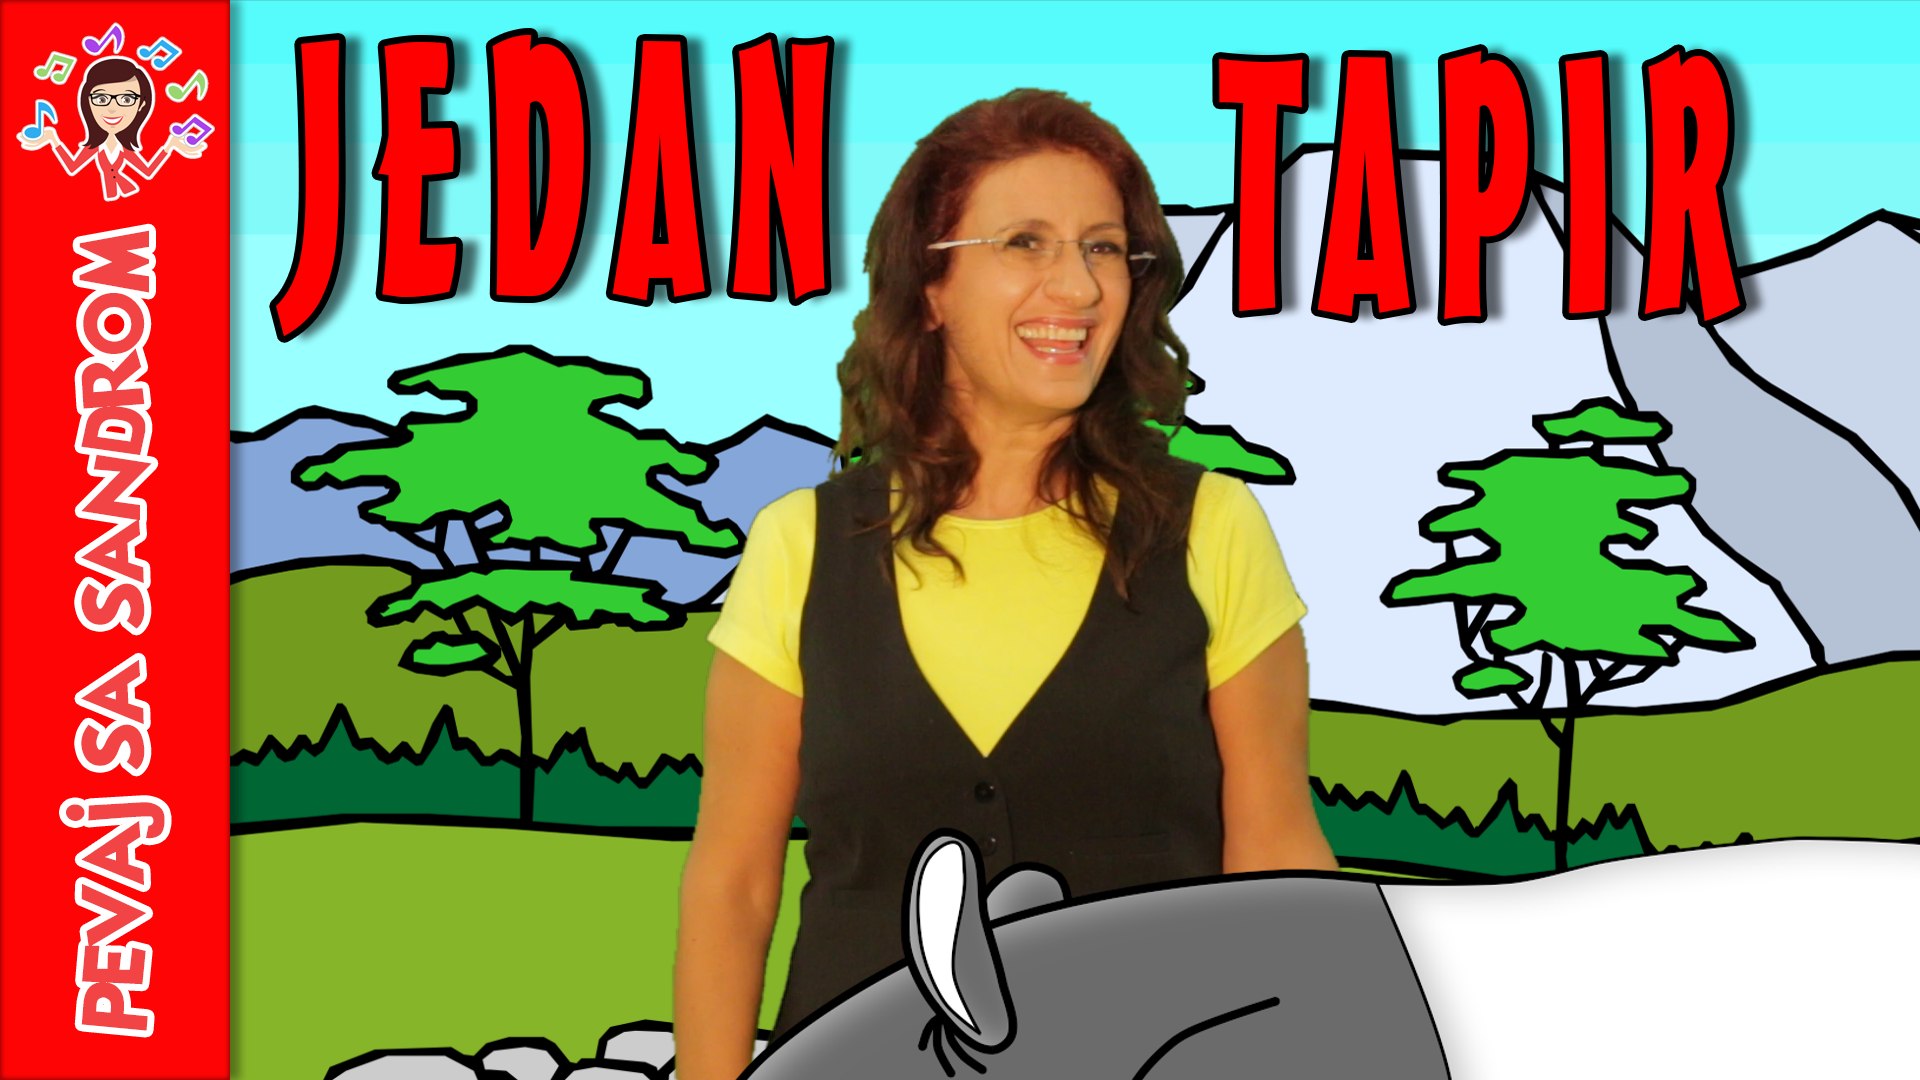 Jedan tapir